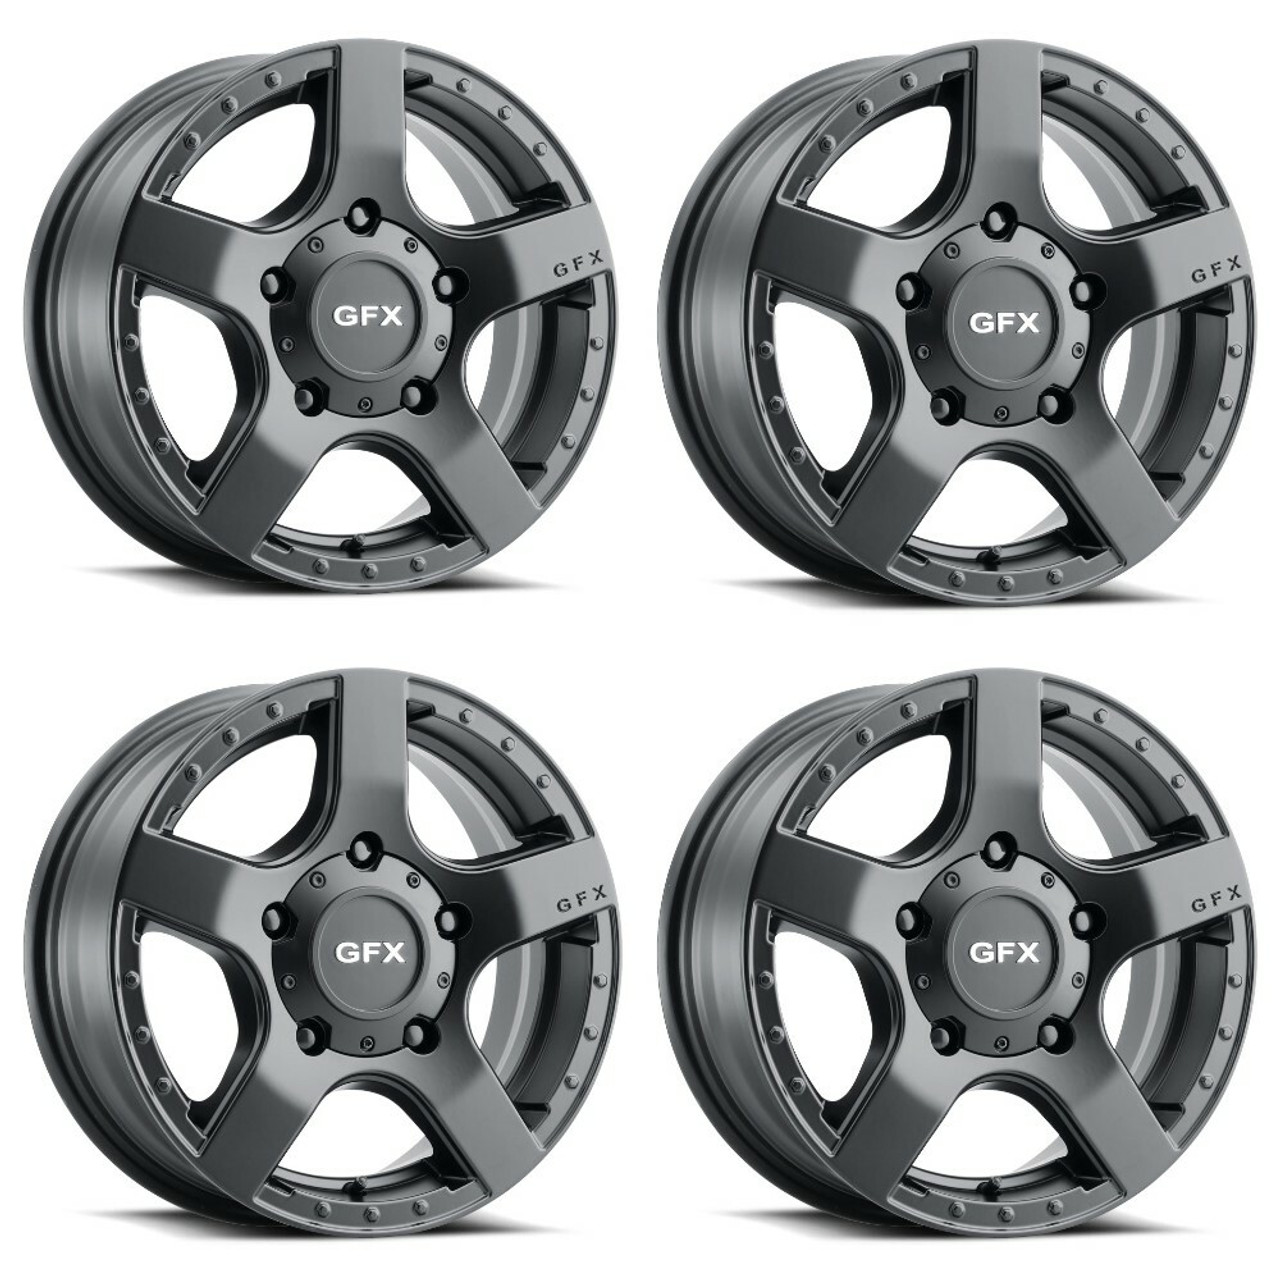 Set 4 16" Voxx G-FX MV1 Matte Black Wheels 16x6.5 5x130 45mm Rims